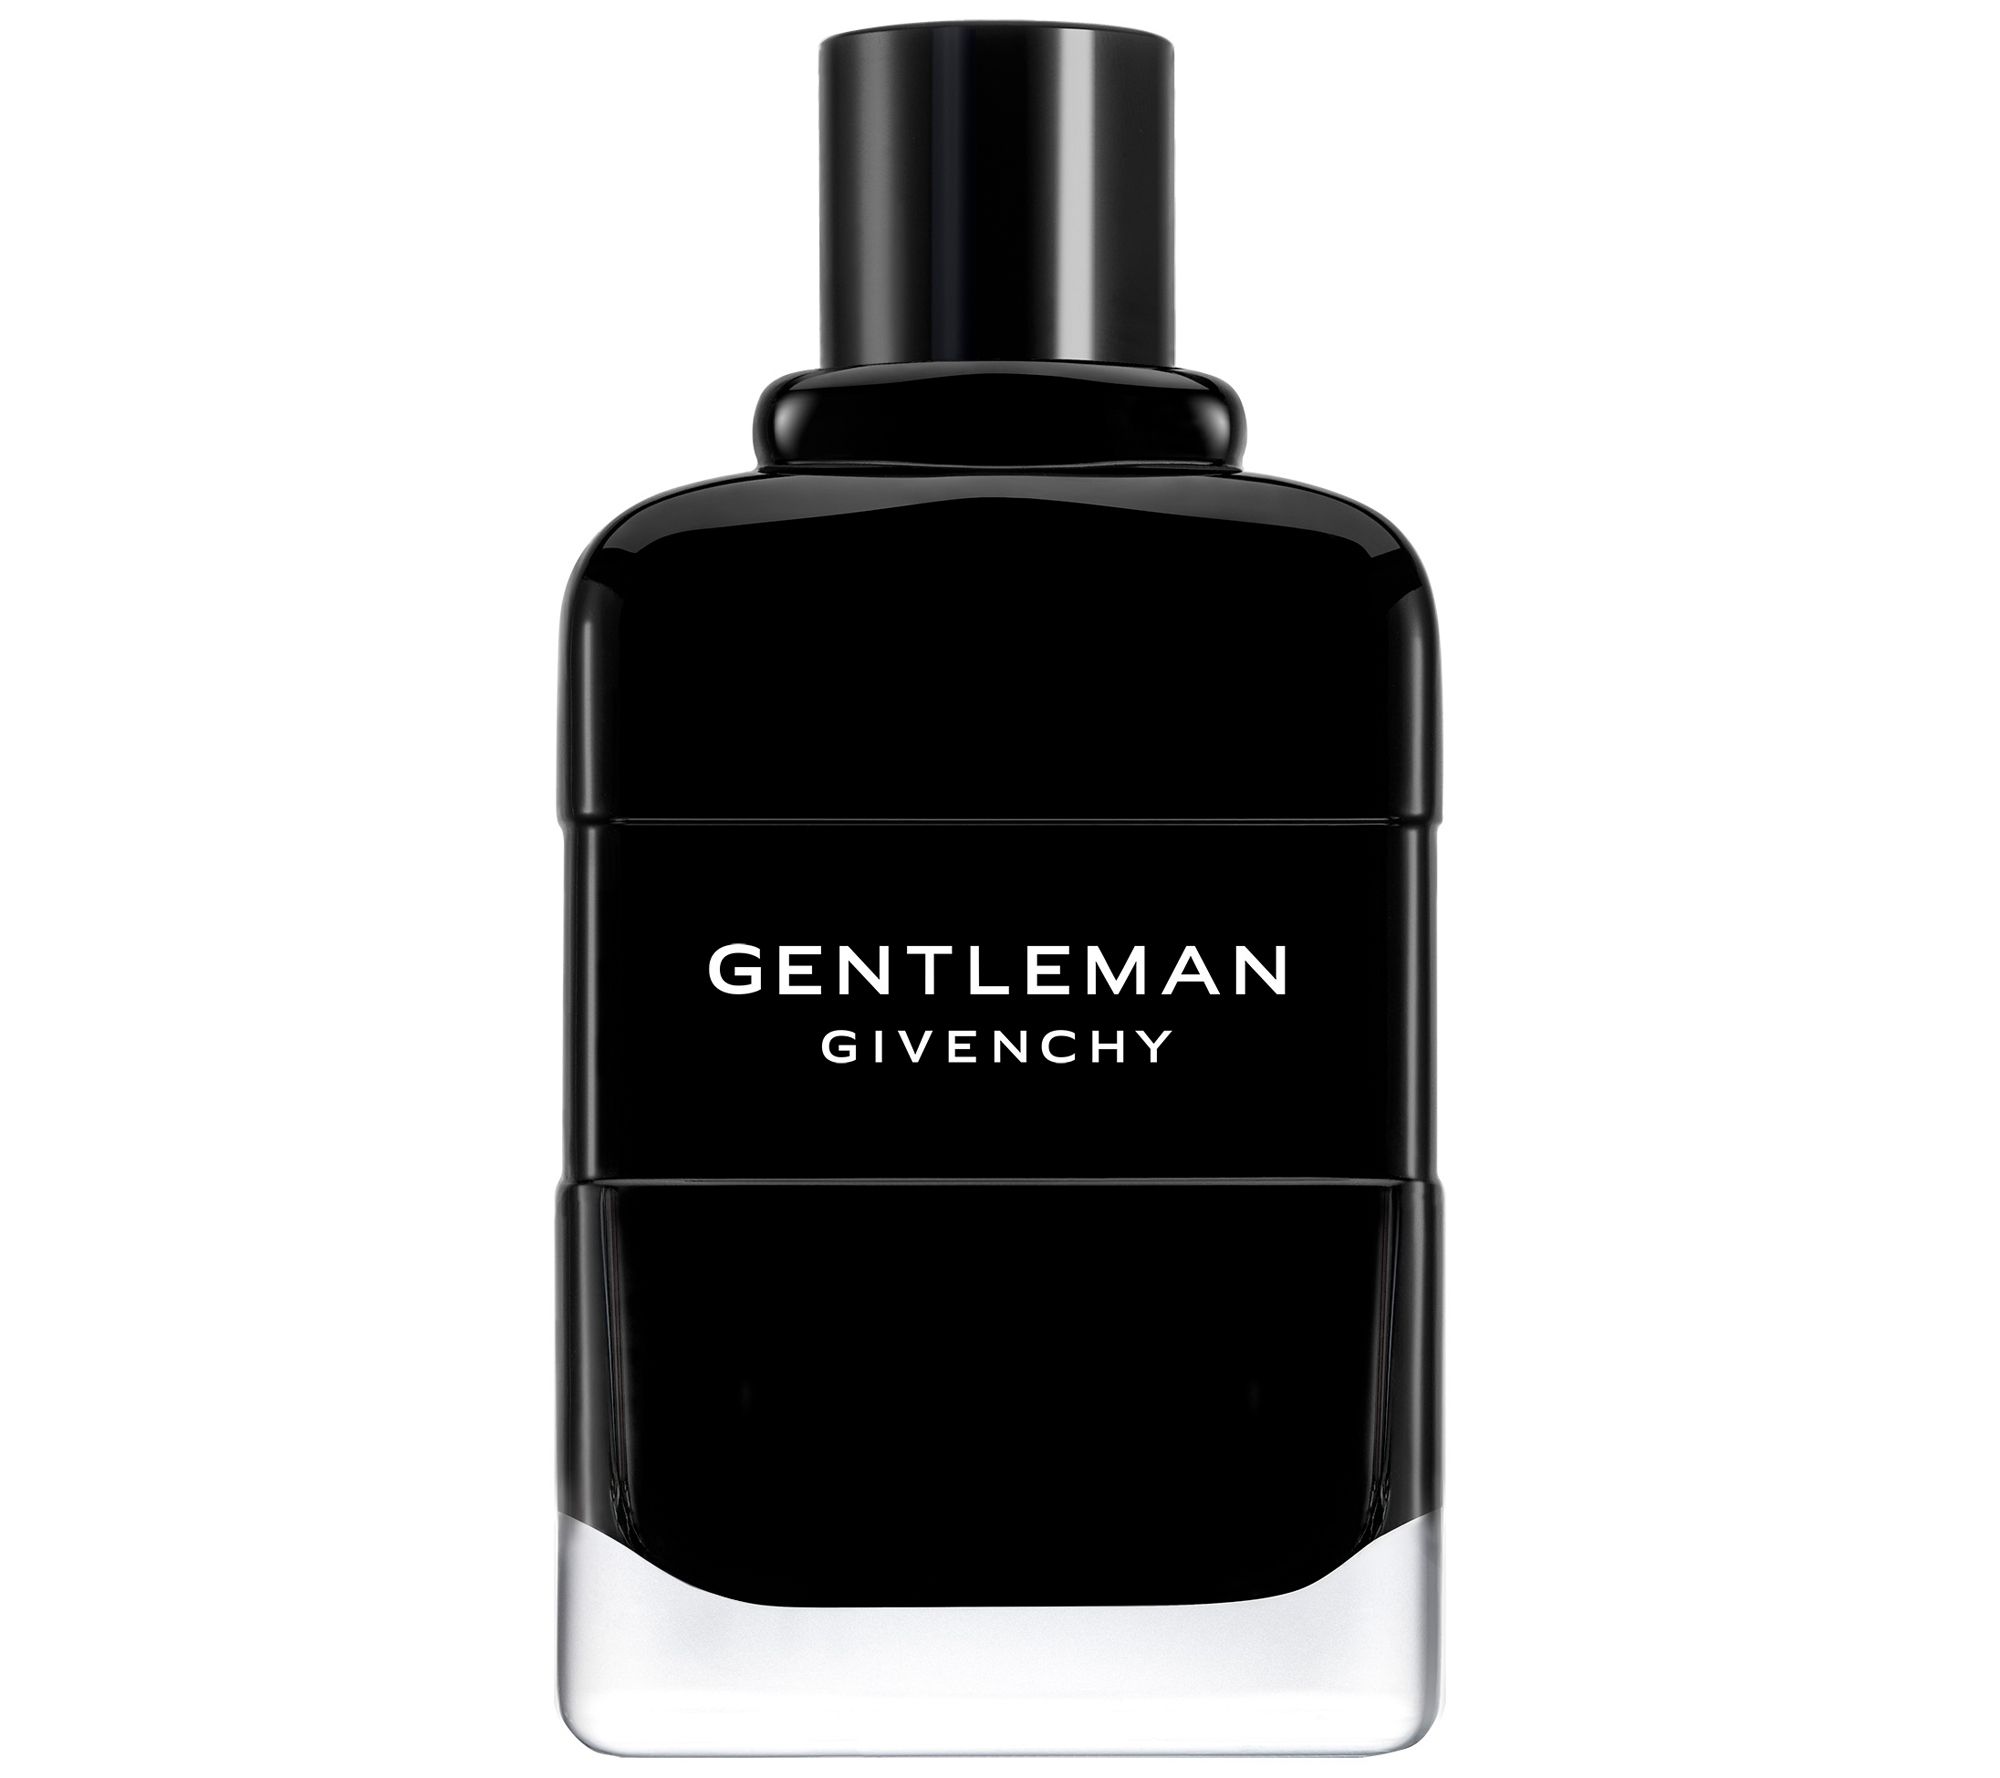 Men's Fragrance, Cologne & Aftershave